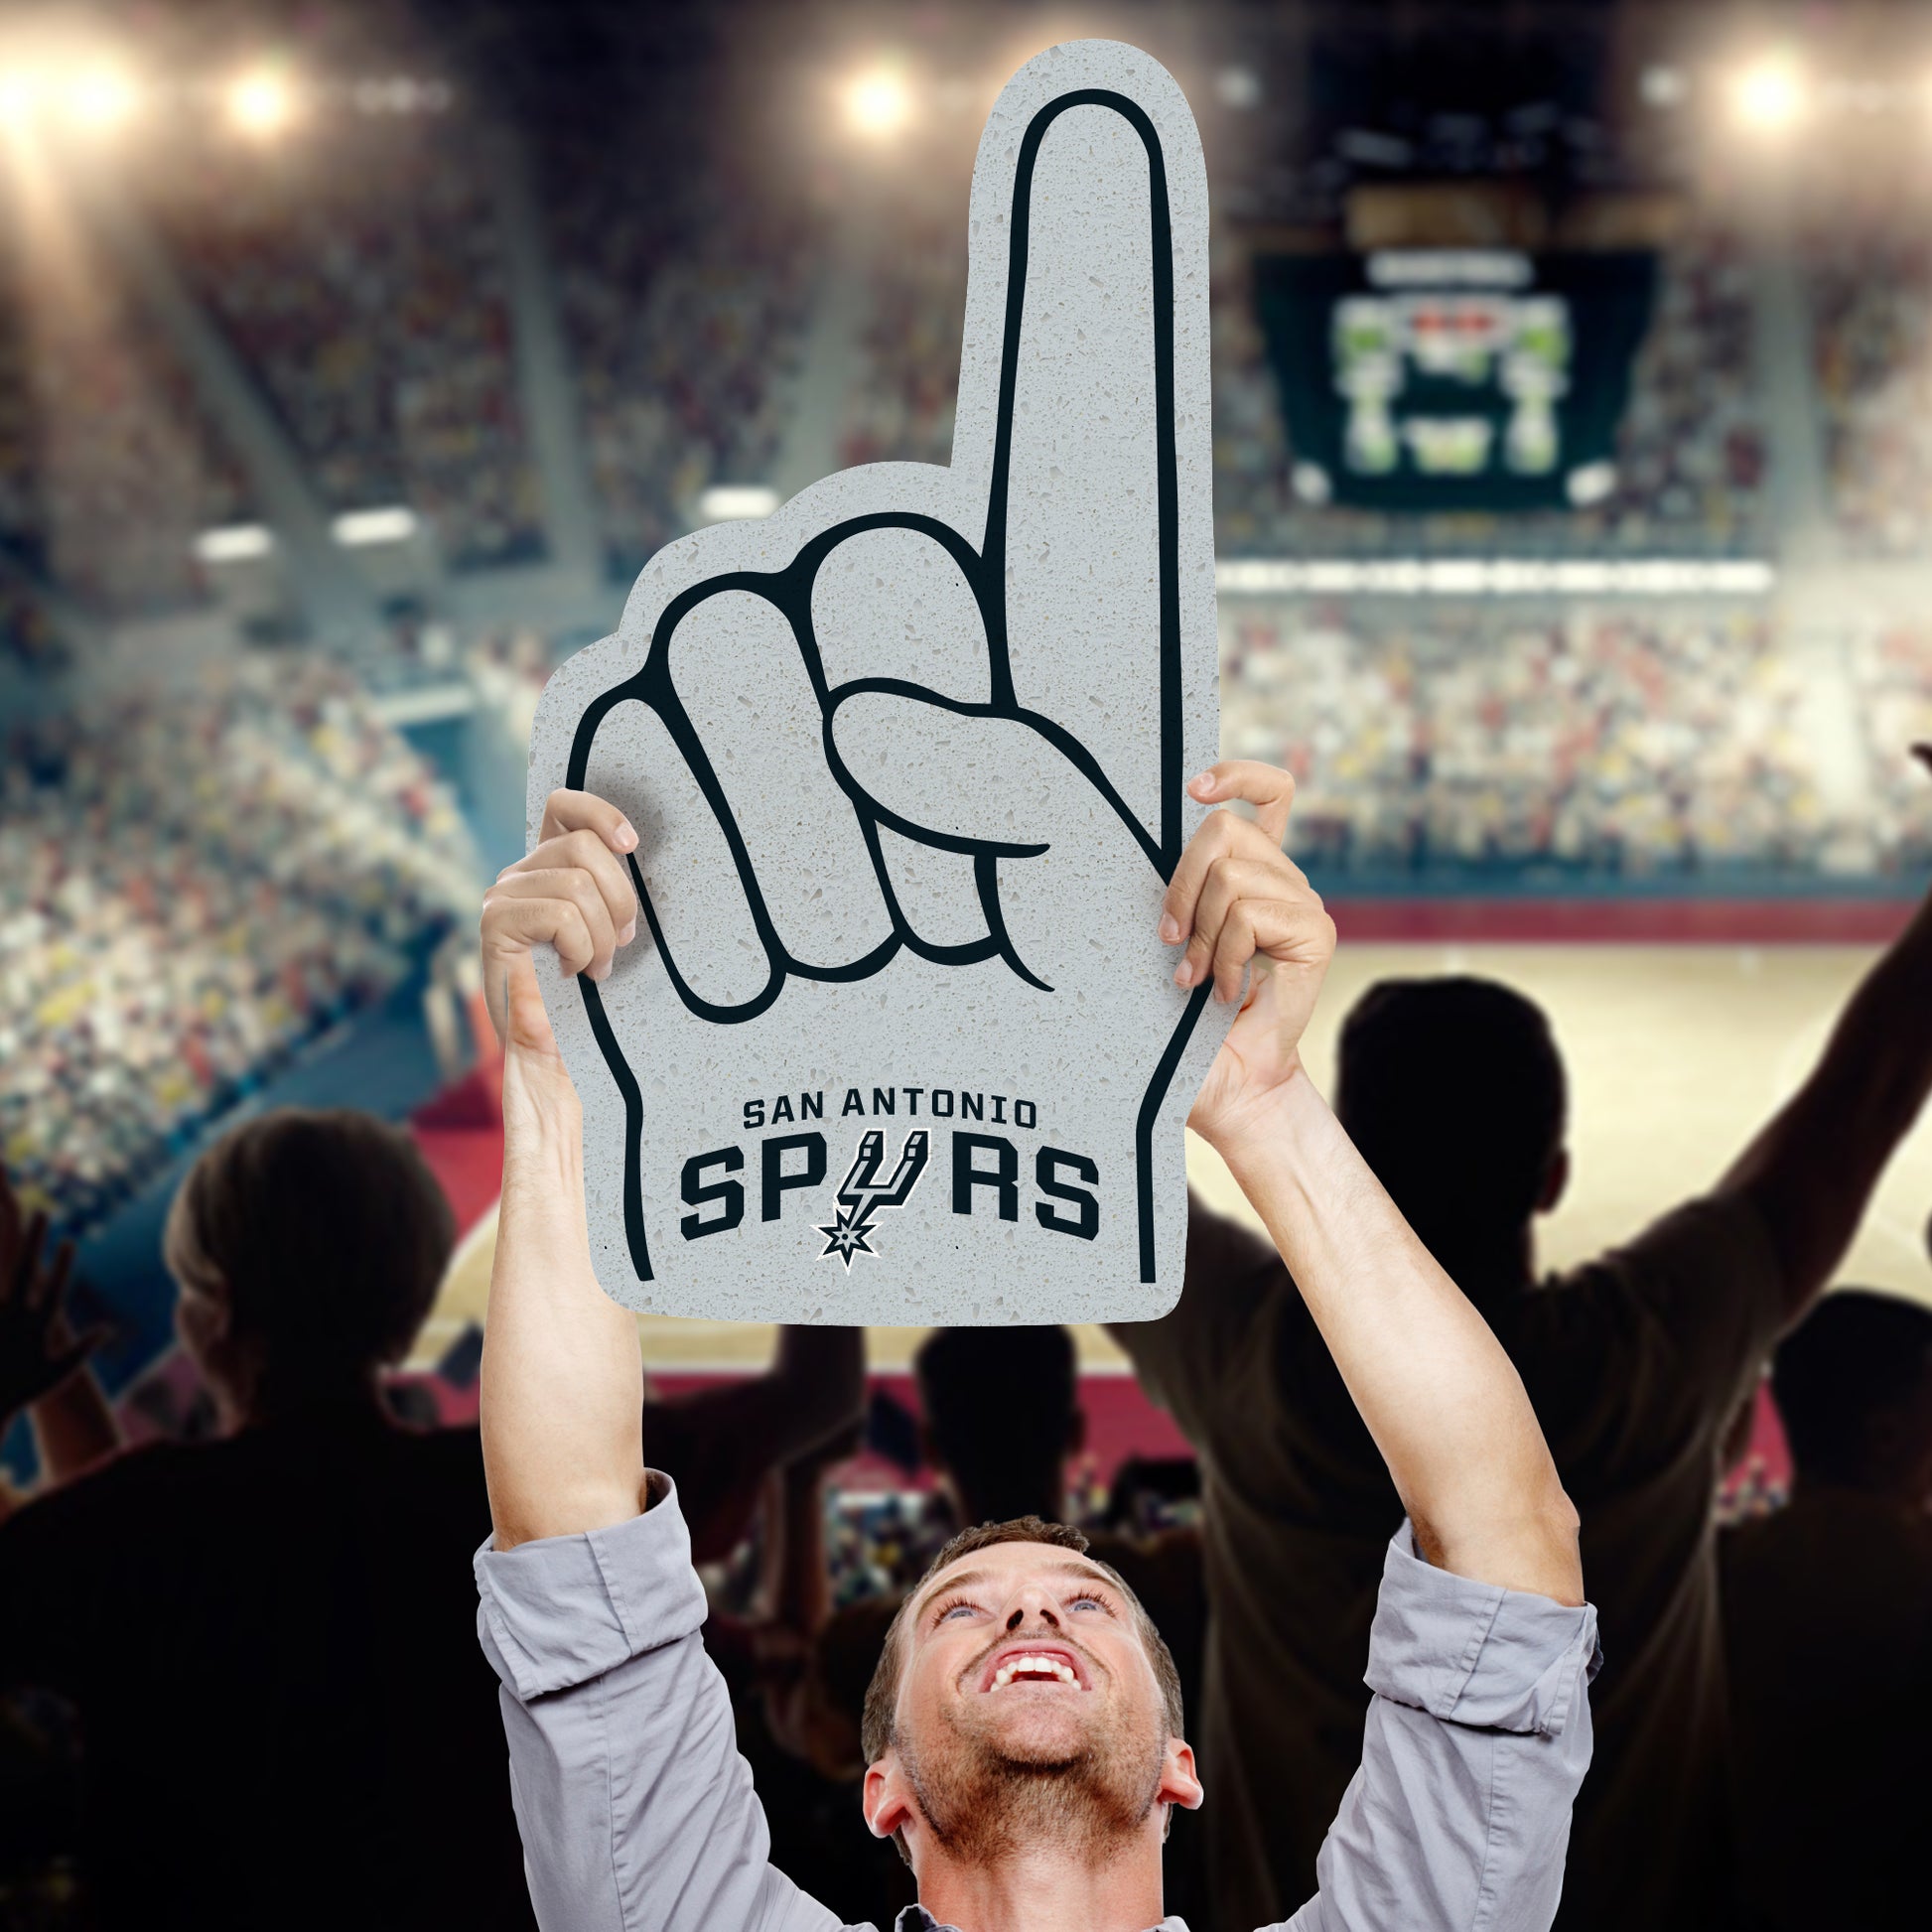 The Official Spurs Fan Shop